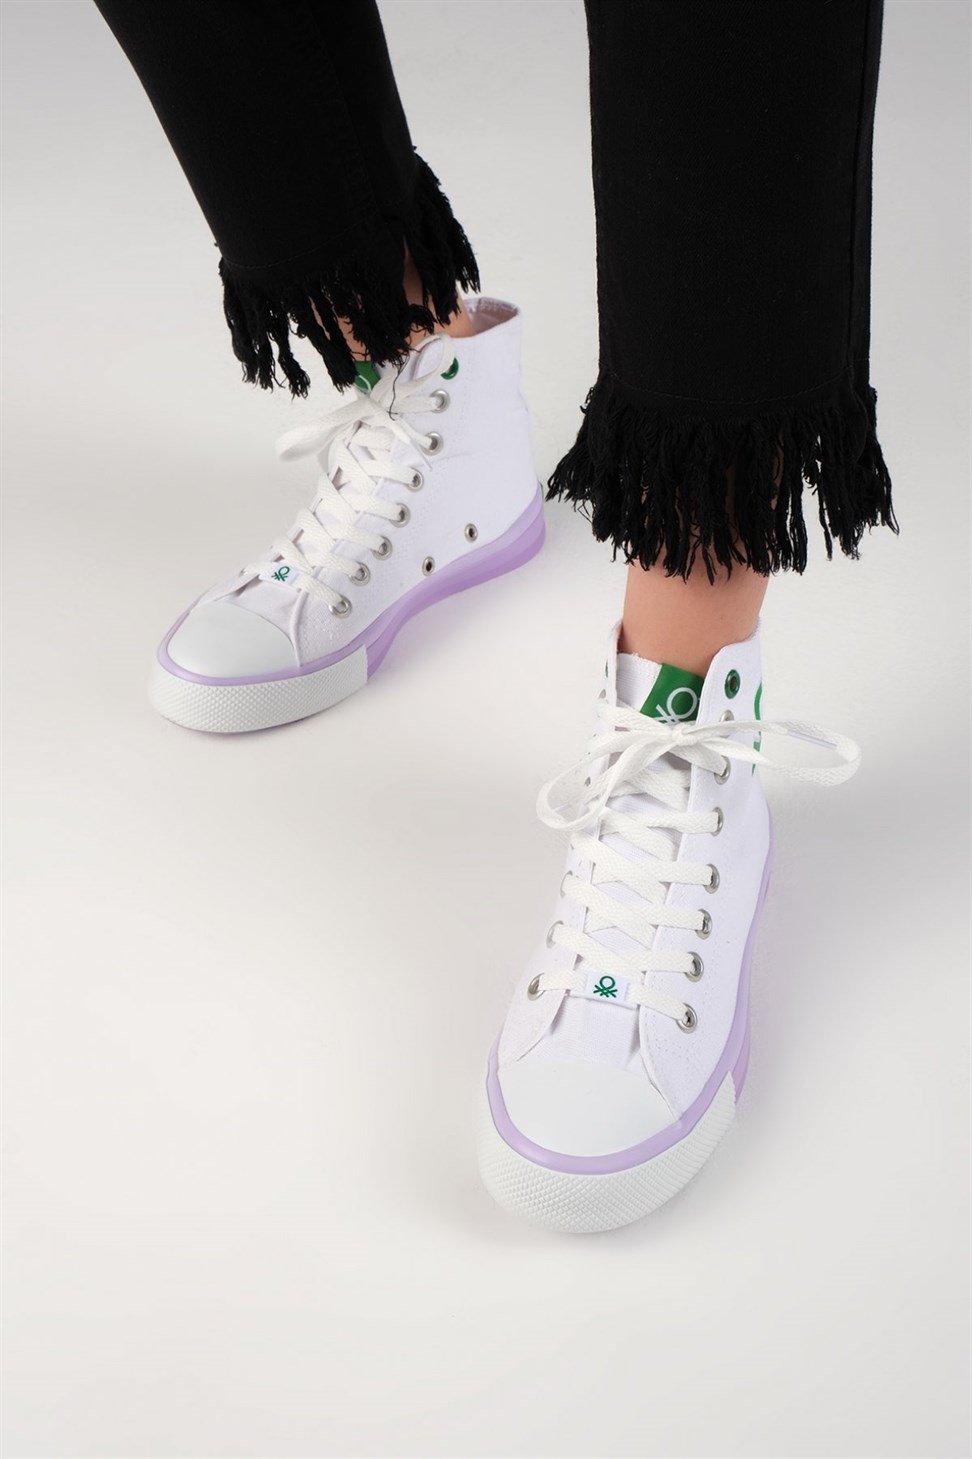 Kadın Benetton Renkli Tabanlı Boğazlı Bez Spor Ayakkabı Beyaz - Lila